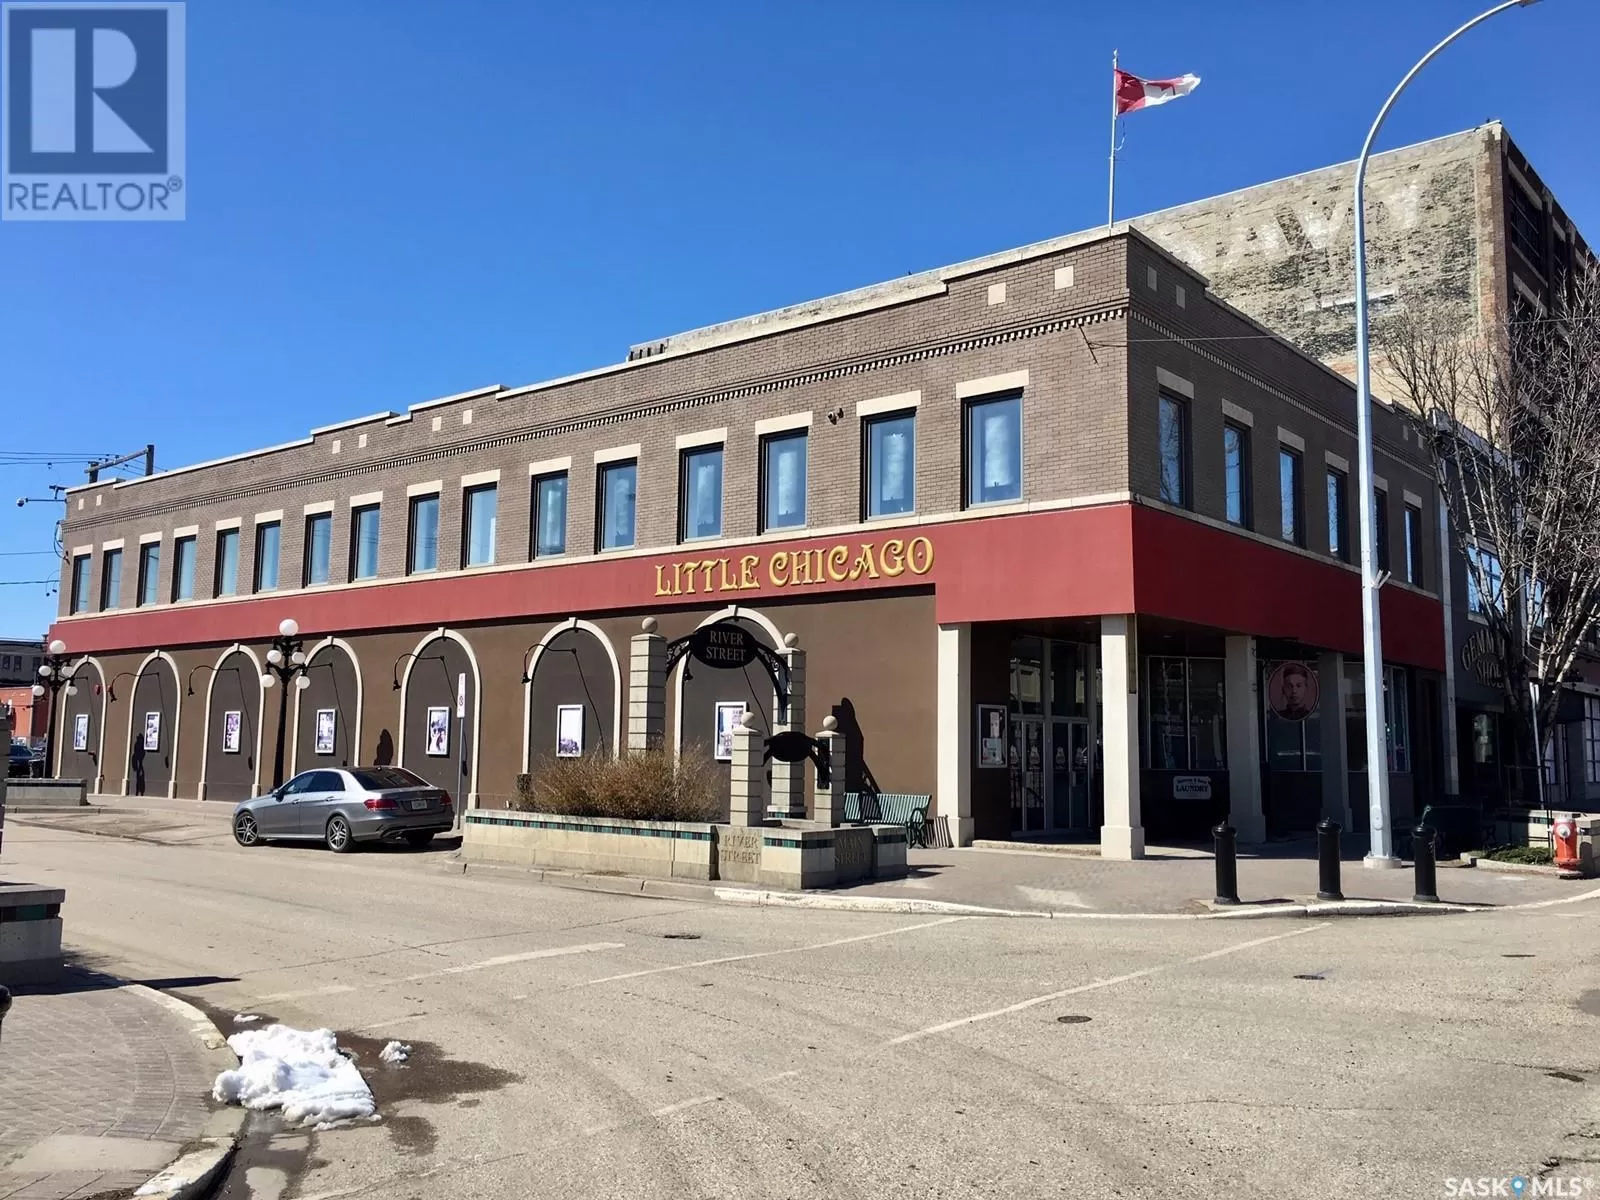 Retail for rent: 108 Main Street N, Moose Jaw, Saskatchewan S6H 3J7